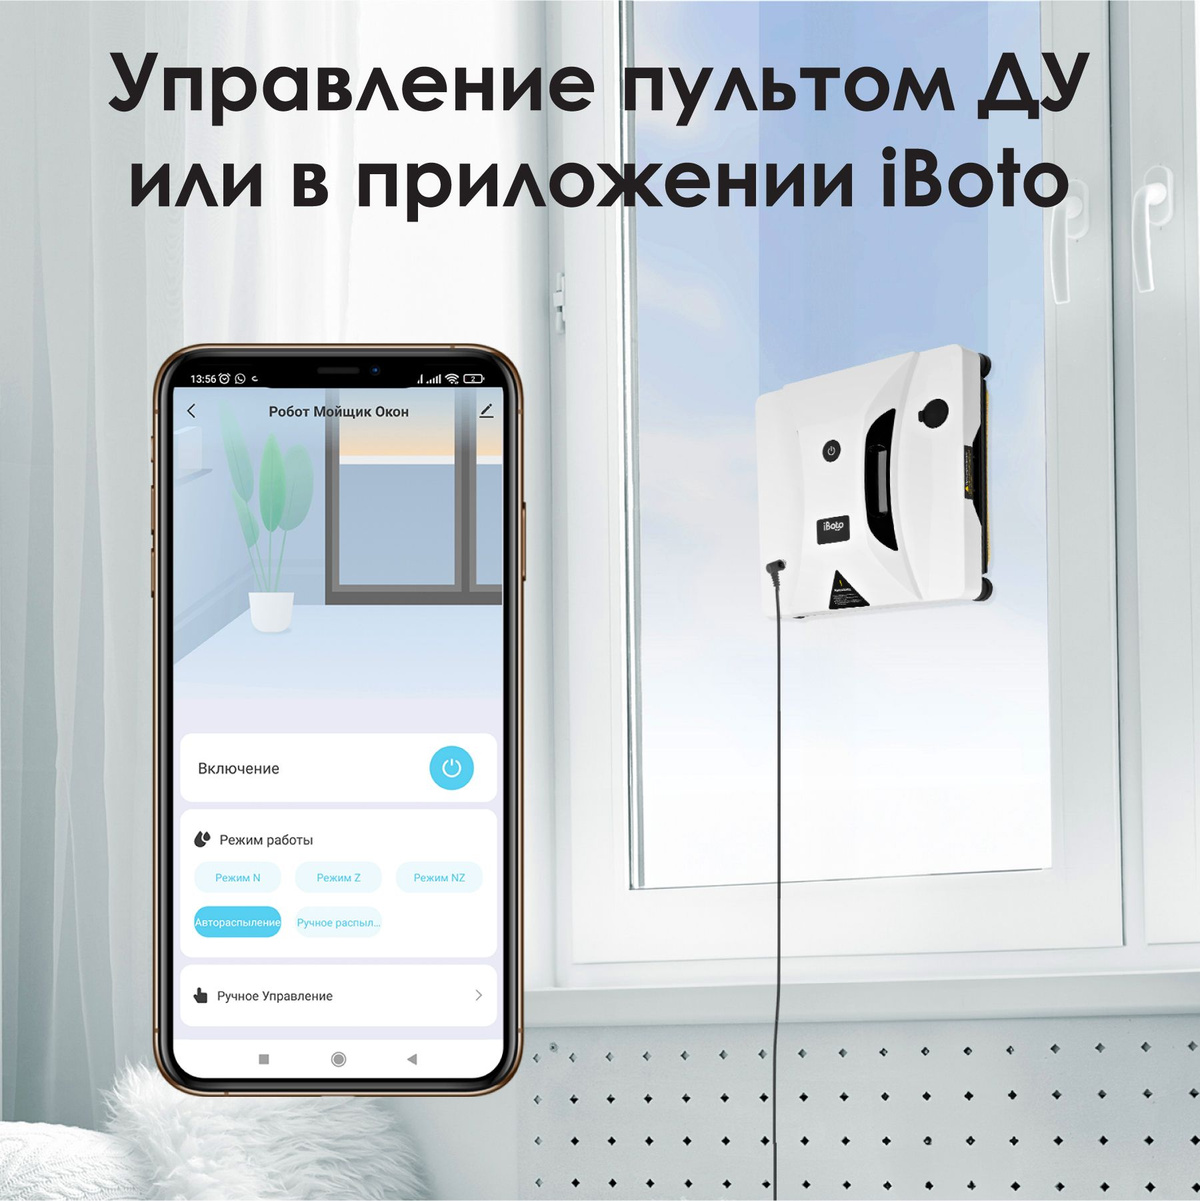 Управление пультом ДУ или в приложении iBoto! Робот для мытья окон легко управляется с помощью пульта дистанционного управления или мобильного приложения в фирменном приложении iBoto на русском языке!